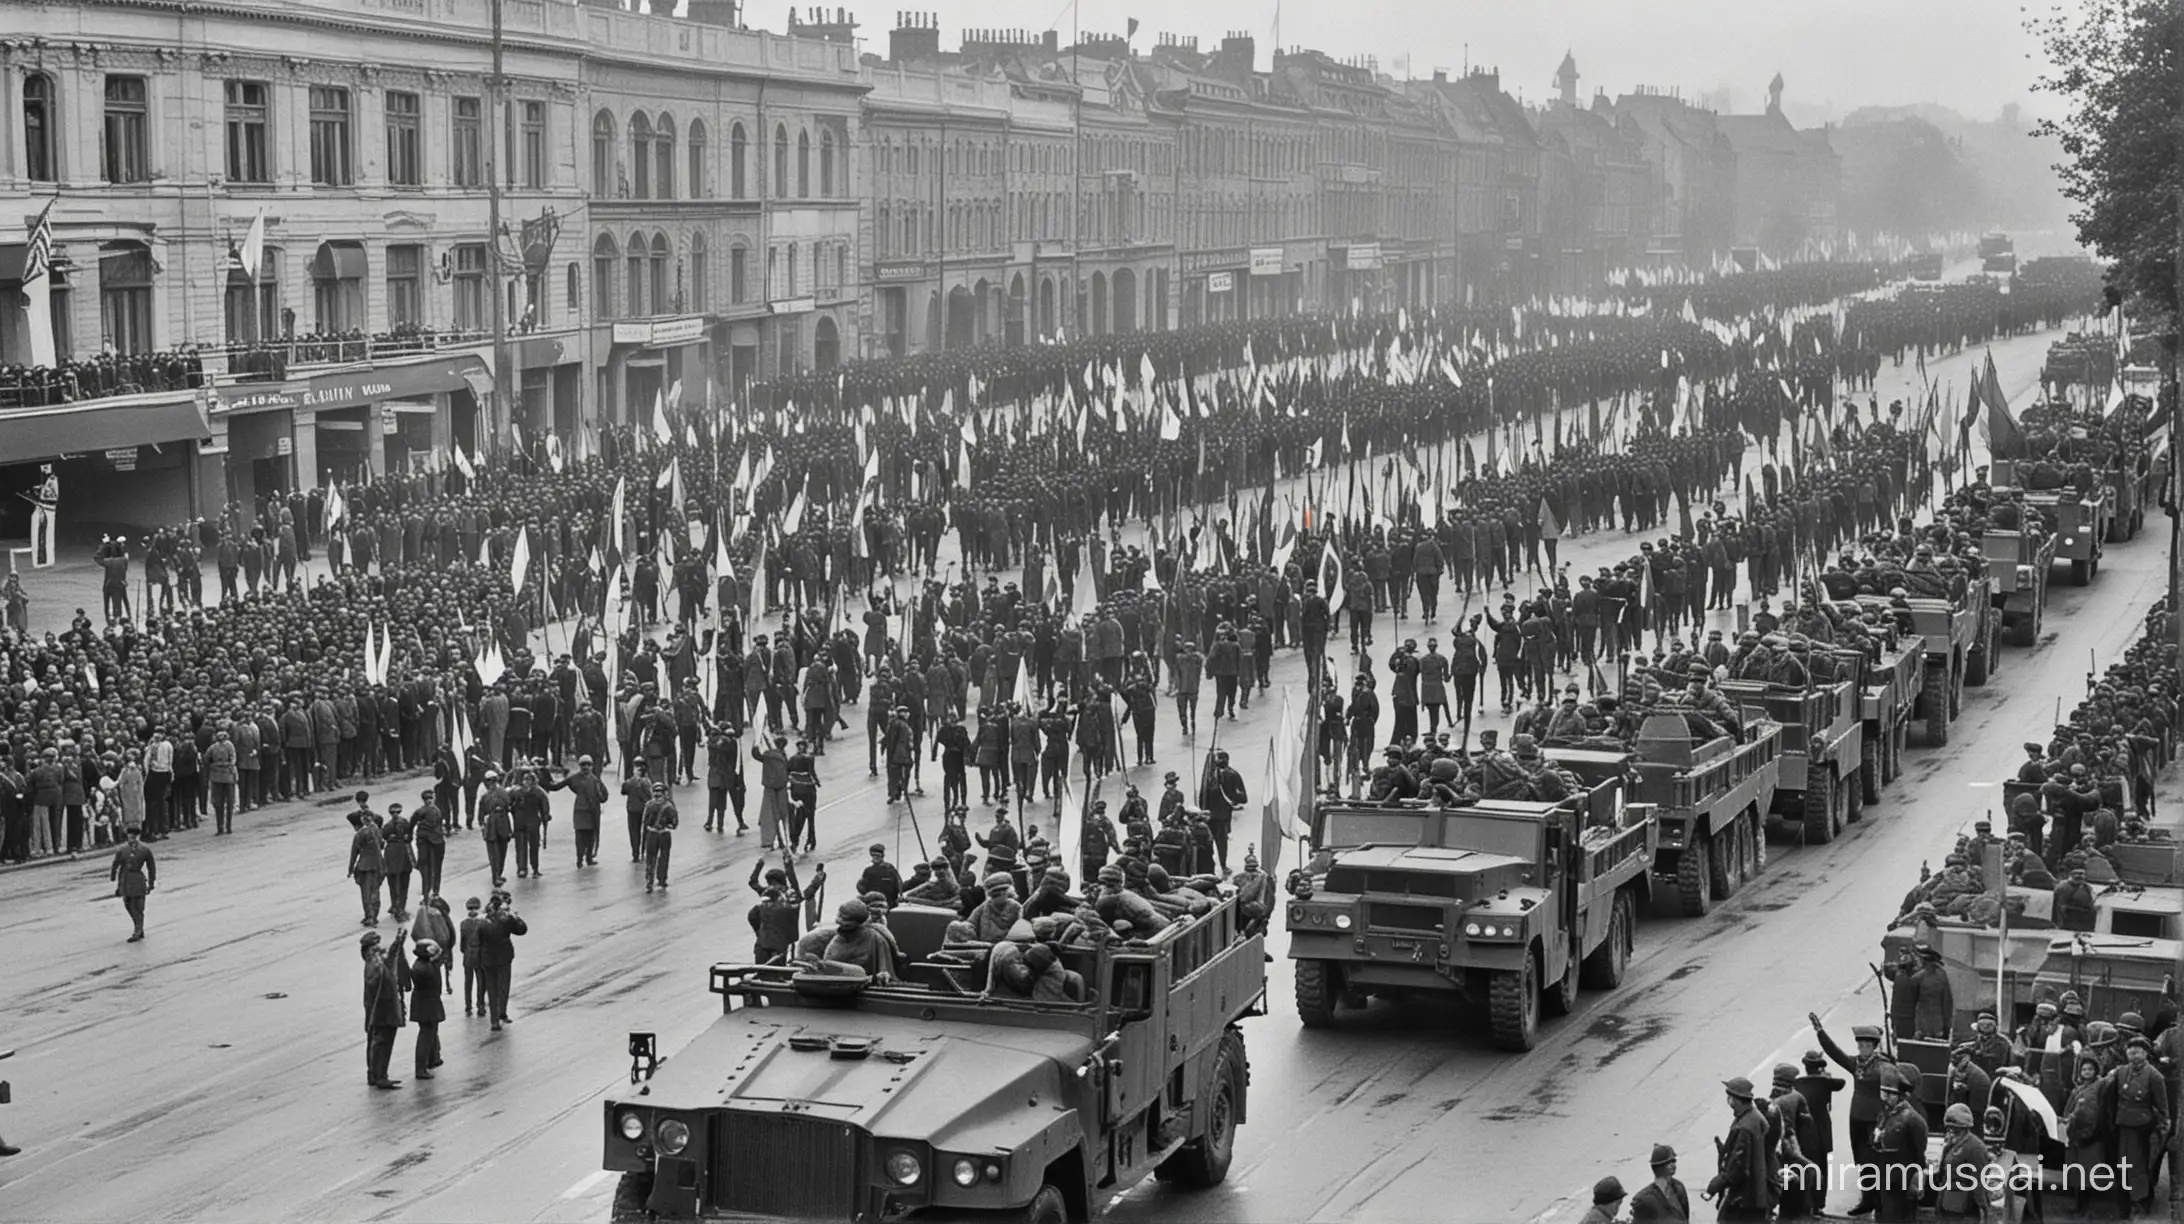 Batalhões militares com filas de civis levantando o braço direito no Anglo de 45 fraus. e militares Romenos recepcionando. Bandeiras da Romênia hasteadas ao fundo e carros militares. Fotografia de 1914.